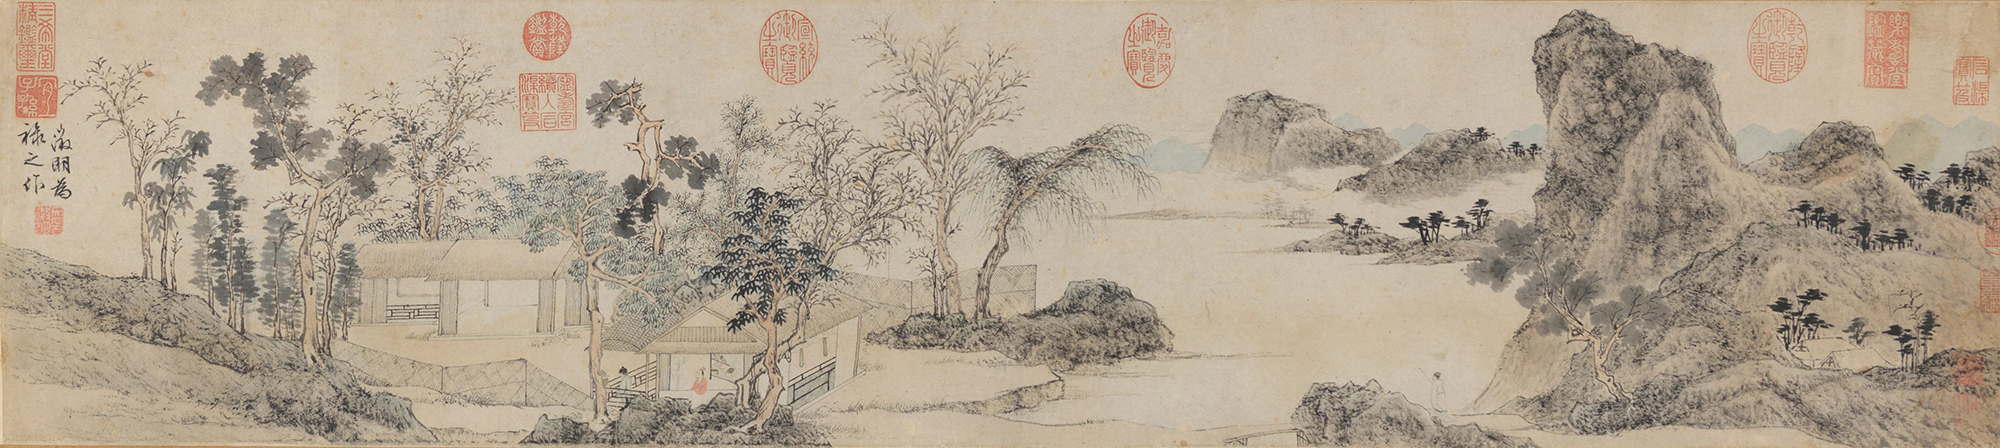 林榭煎茶圖卷 天津博物館藏 文徵明 明 25.7×114.9cm 紙本設色